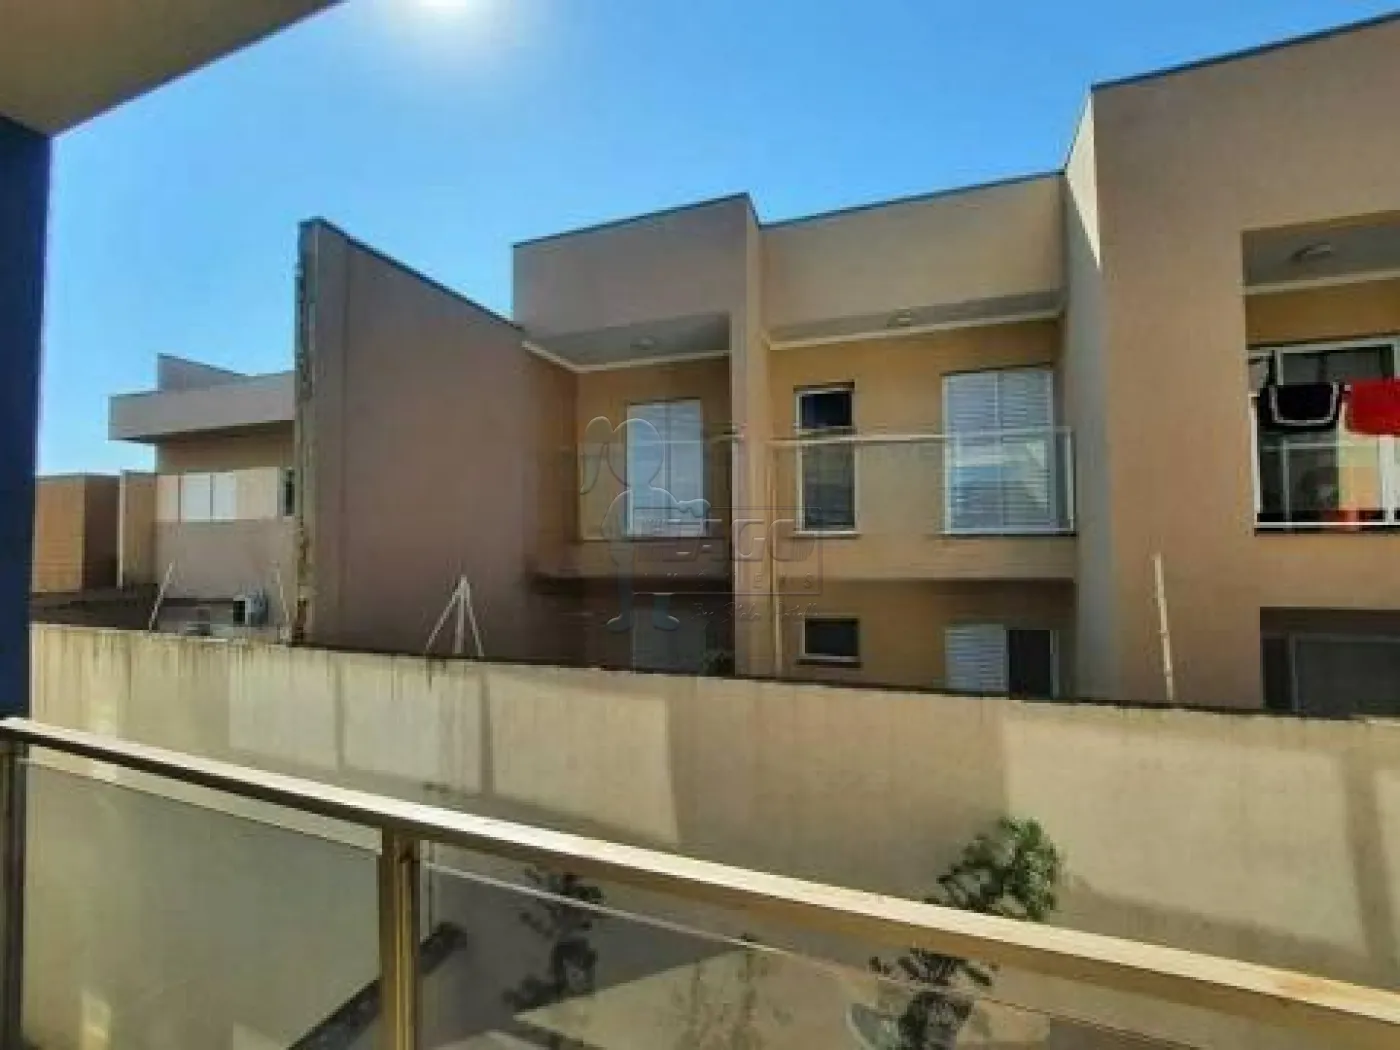 Comprar Apartamentos / Padrão em Ribeirão Preto R$ 300.000,00 - Foto 3